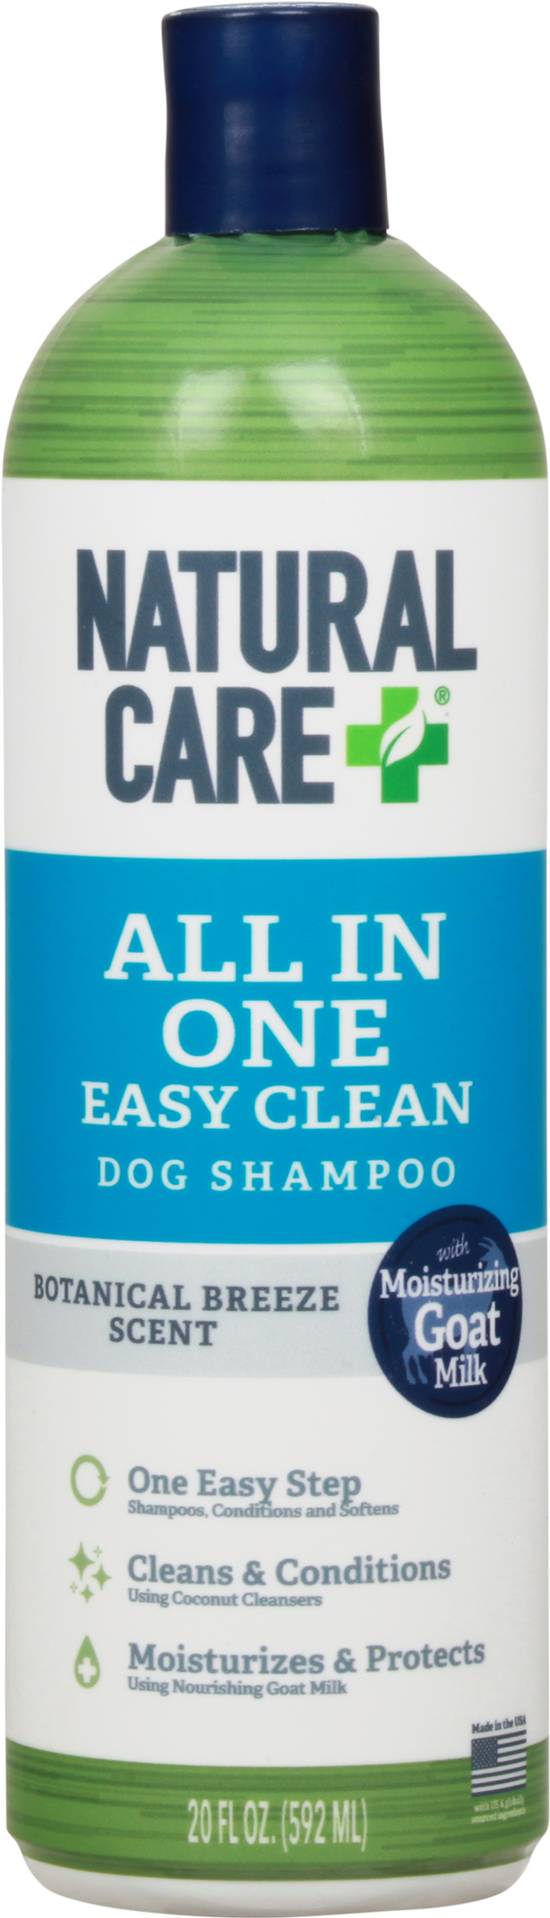 Natural Care + Dog Shampoo (20 oz)